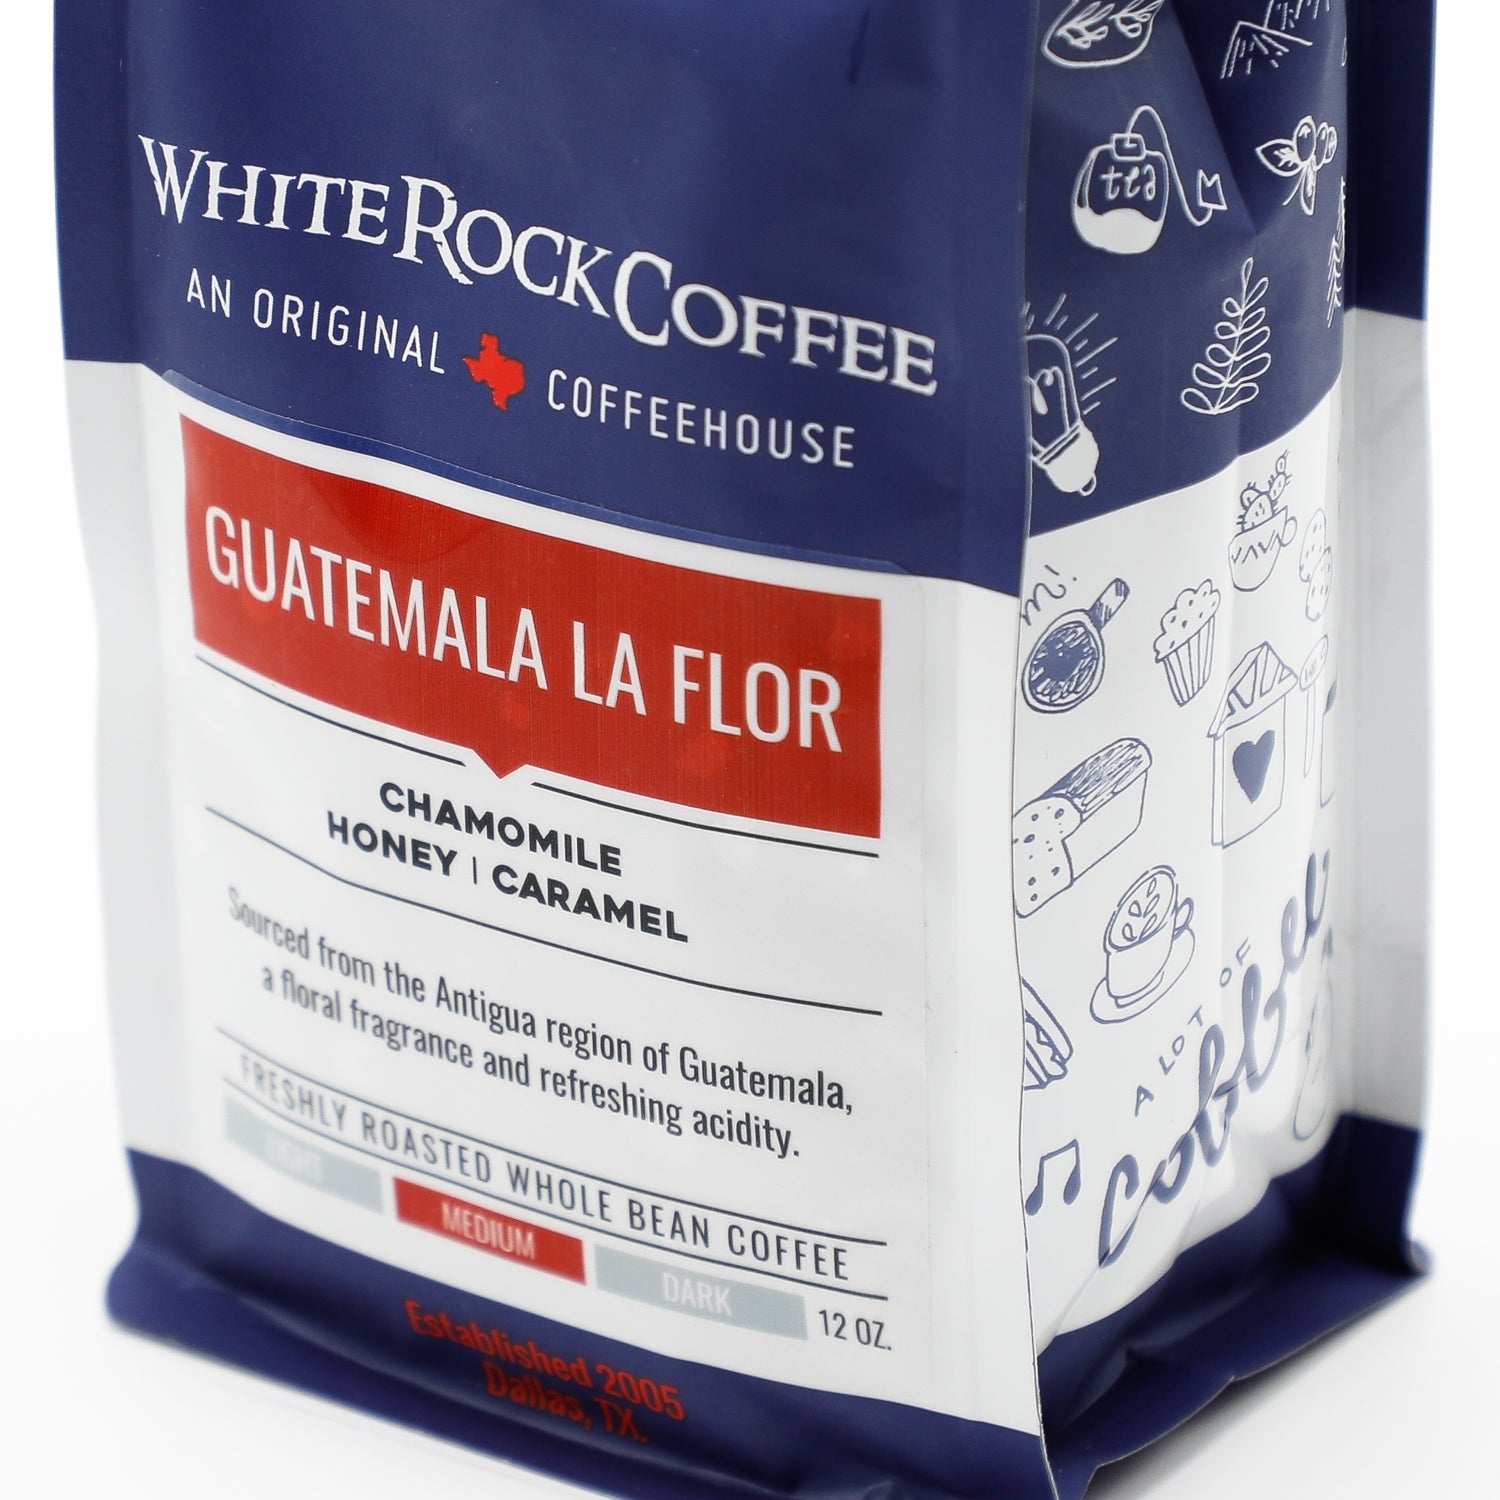 Guatemala la Flor - White Rock Coffee